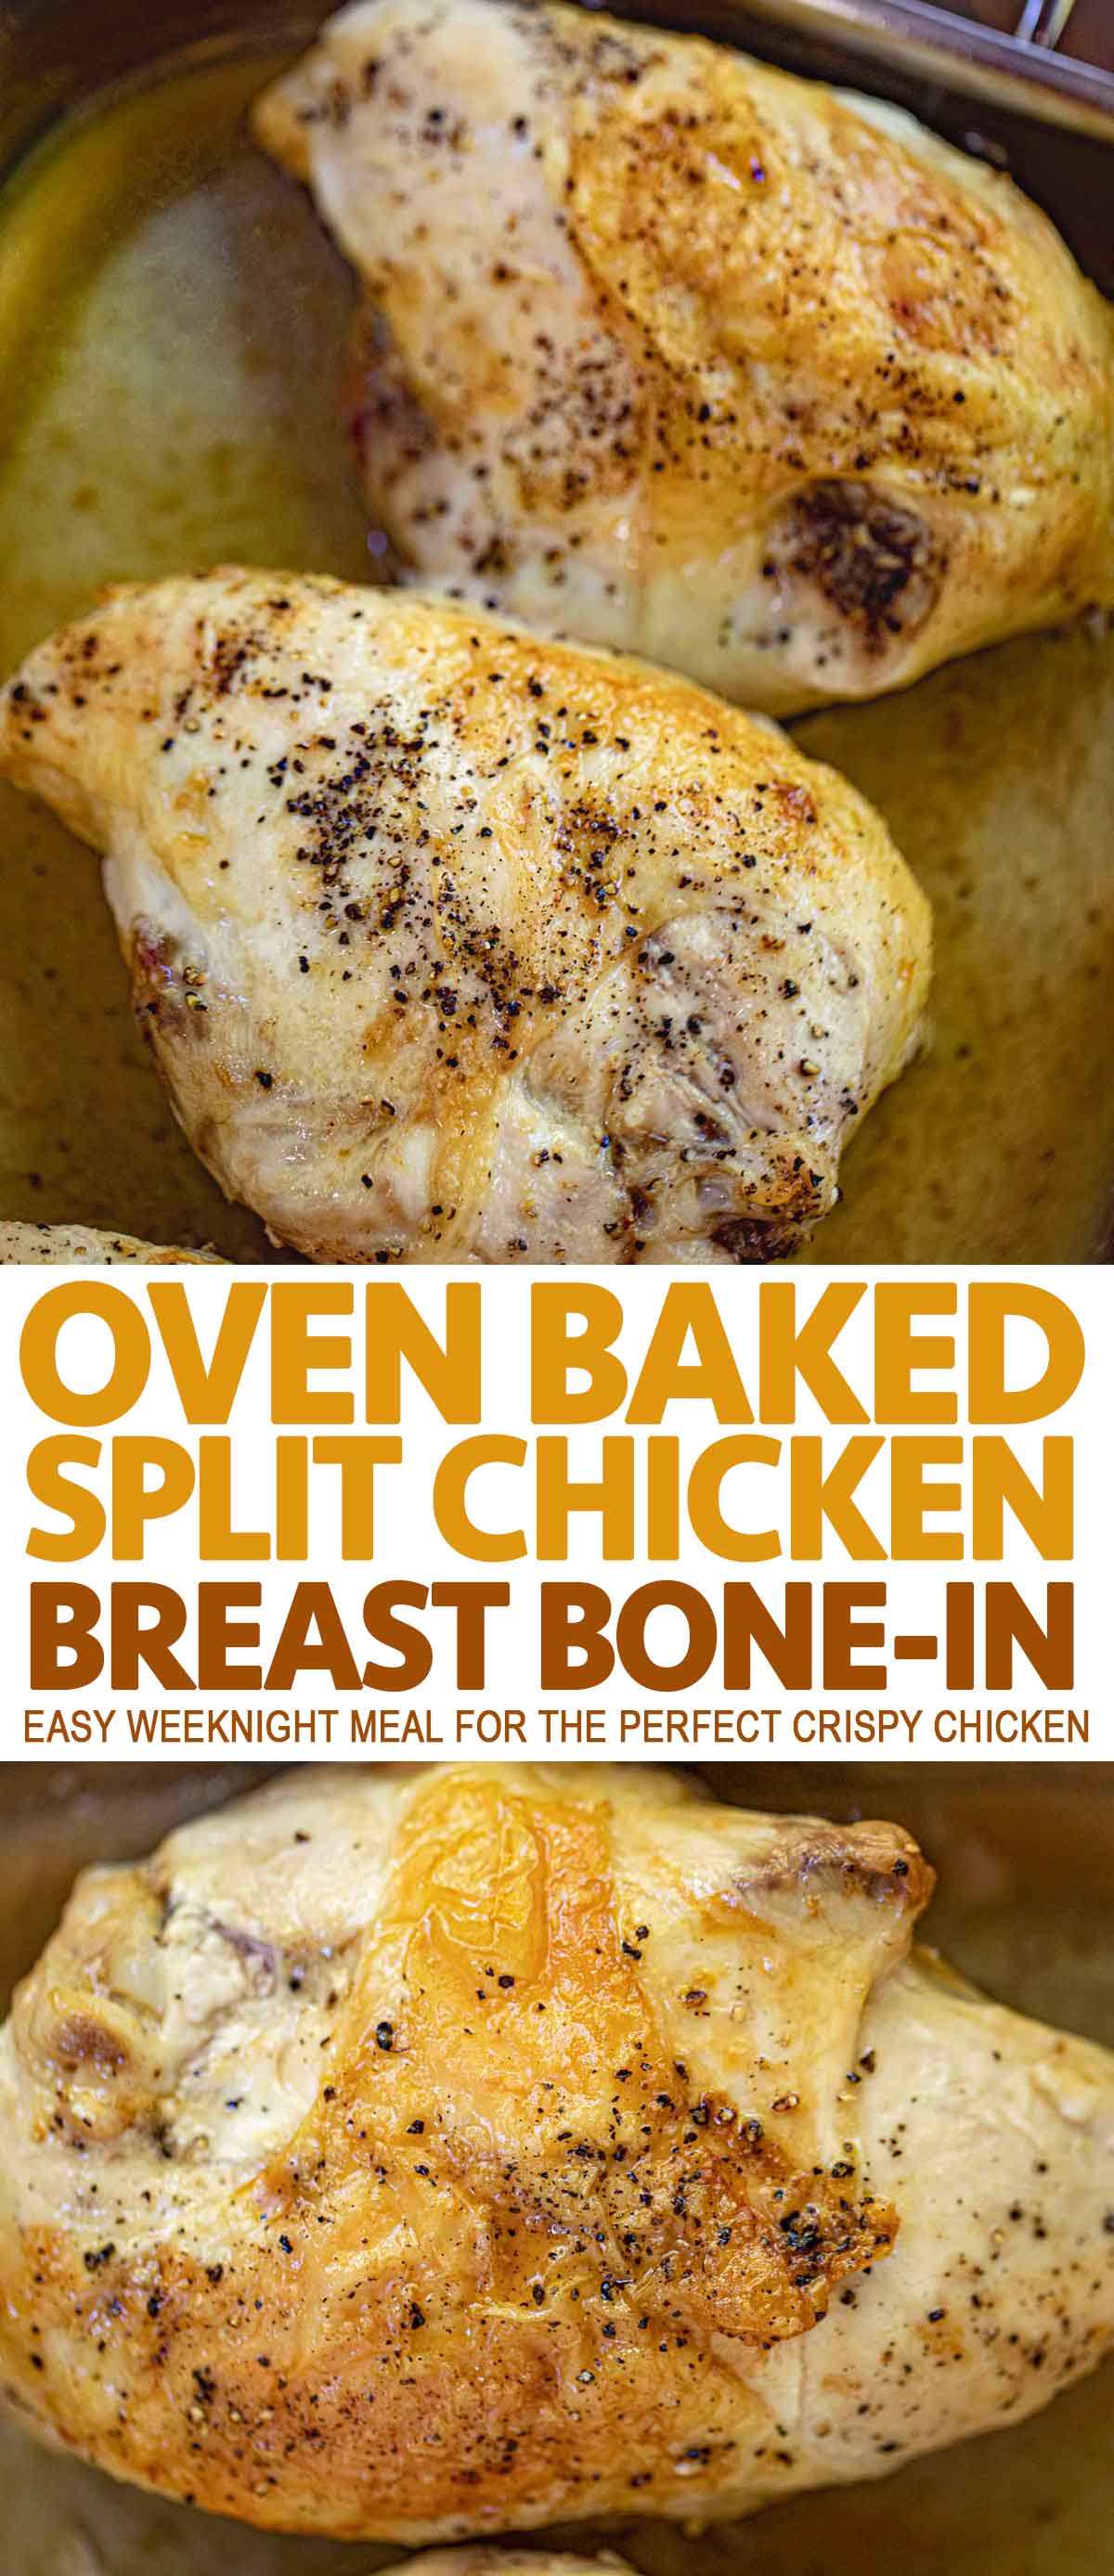 chicken breast done temp